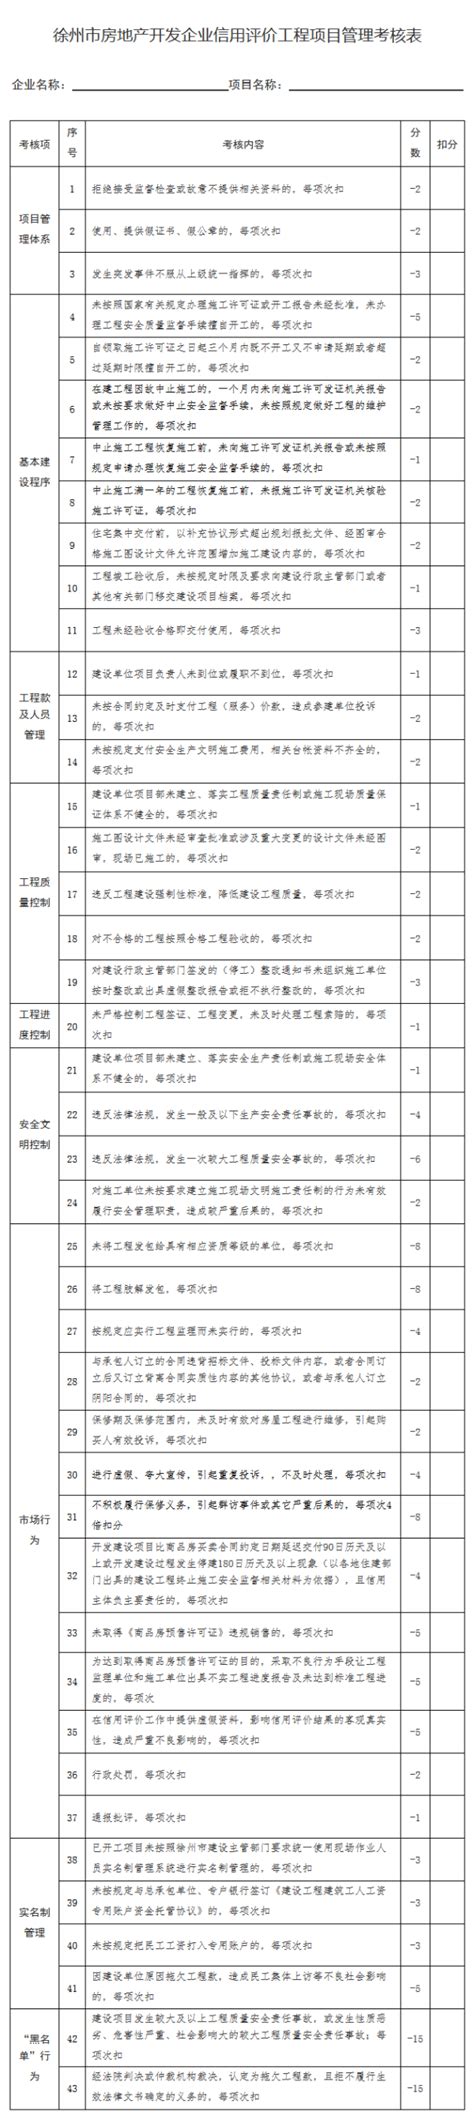 徐州市房地产开发企业信用评价细则（试行）_中房网_中国房地产业协会官方网站